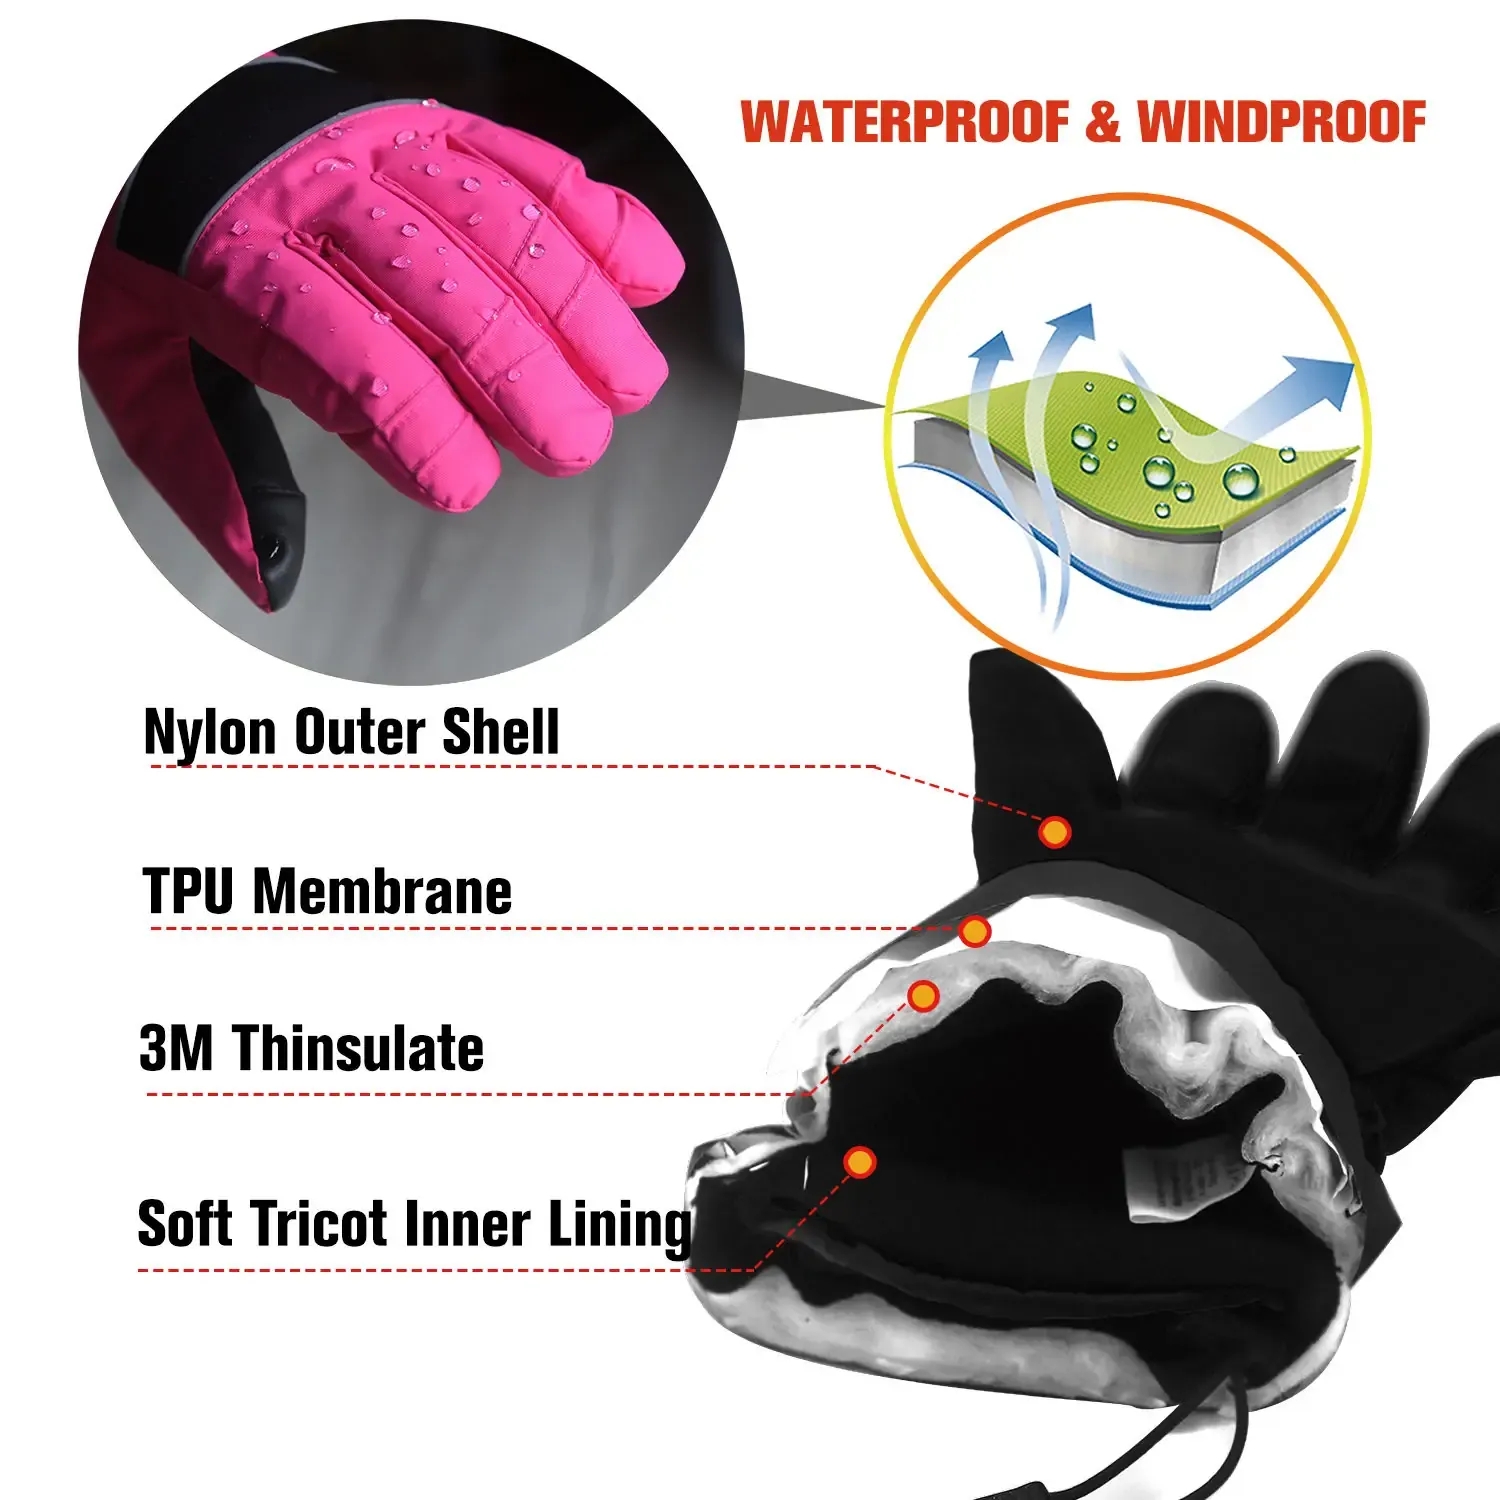 Waterproof Electric Heated Gloves.webp (2).jpg